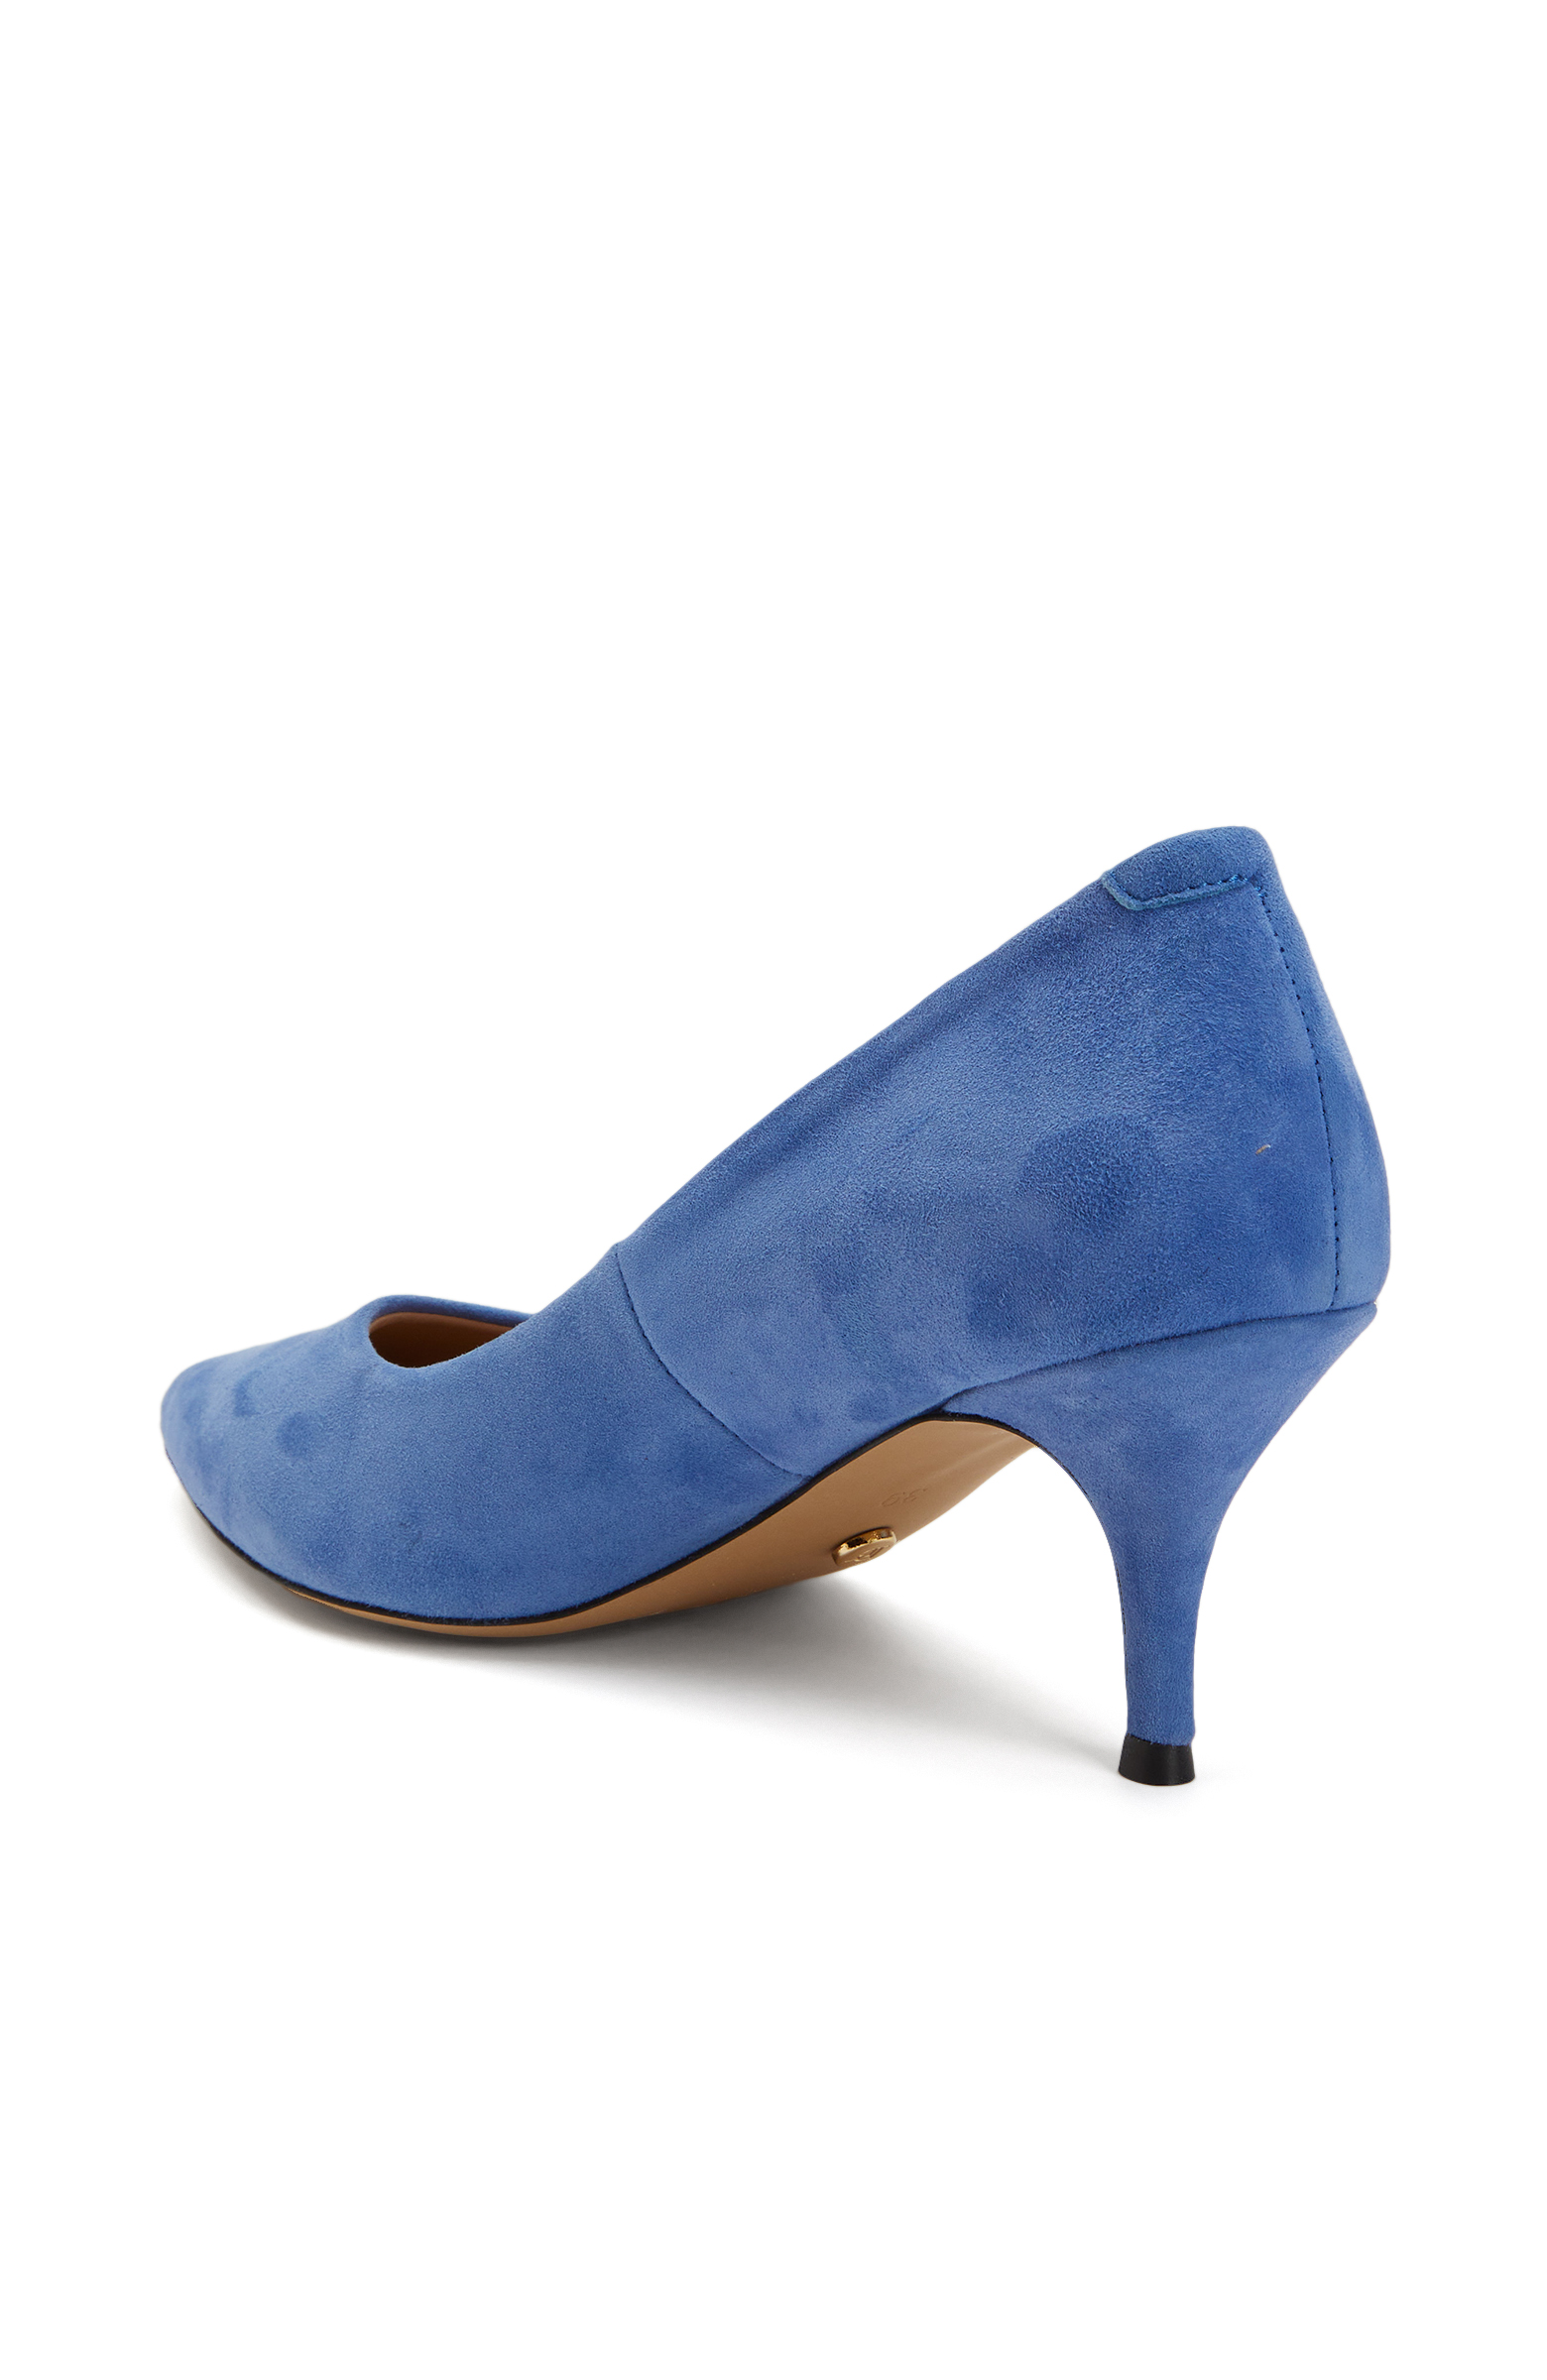 Mavi Süet Topuklu Ayakkabı -3